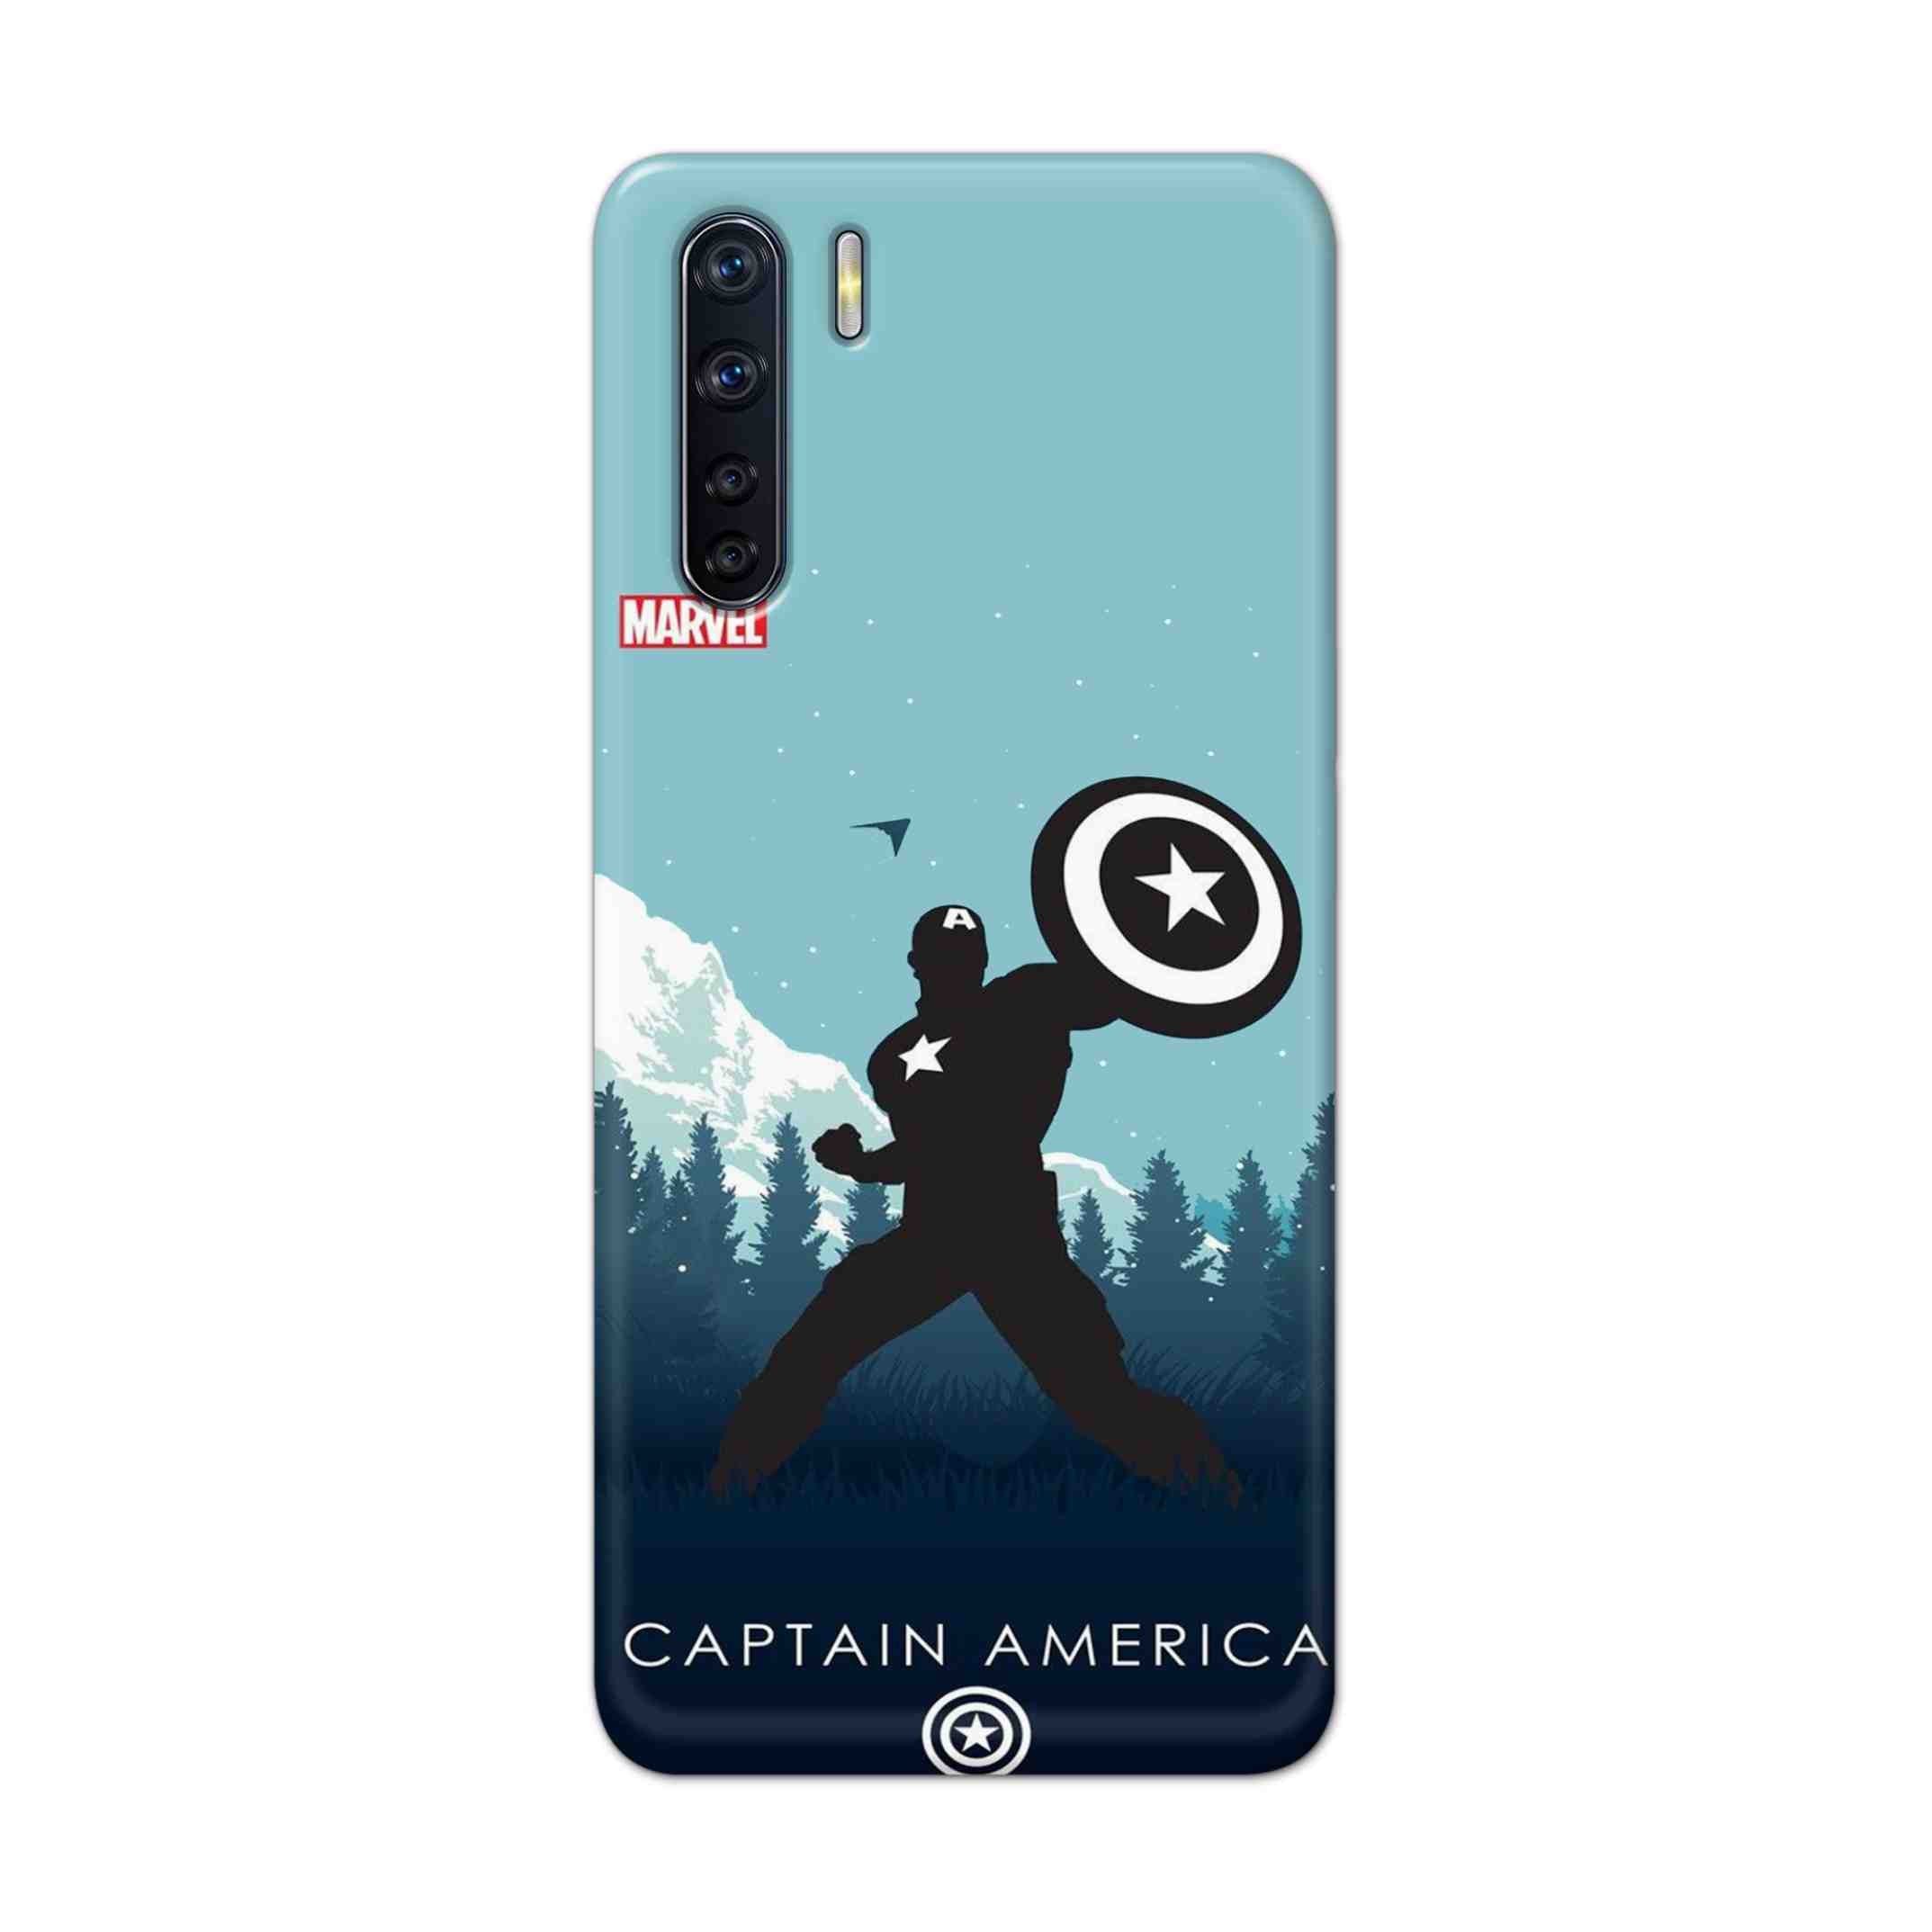 Buy Captain America Hard Back Mobile Phone Case Cover For OPPO F15 Online